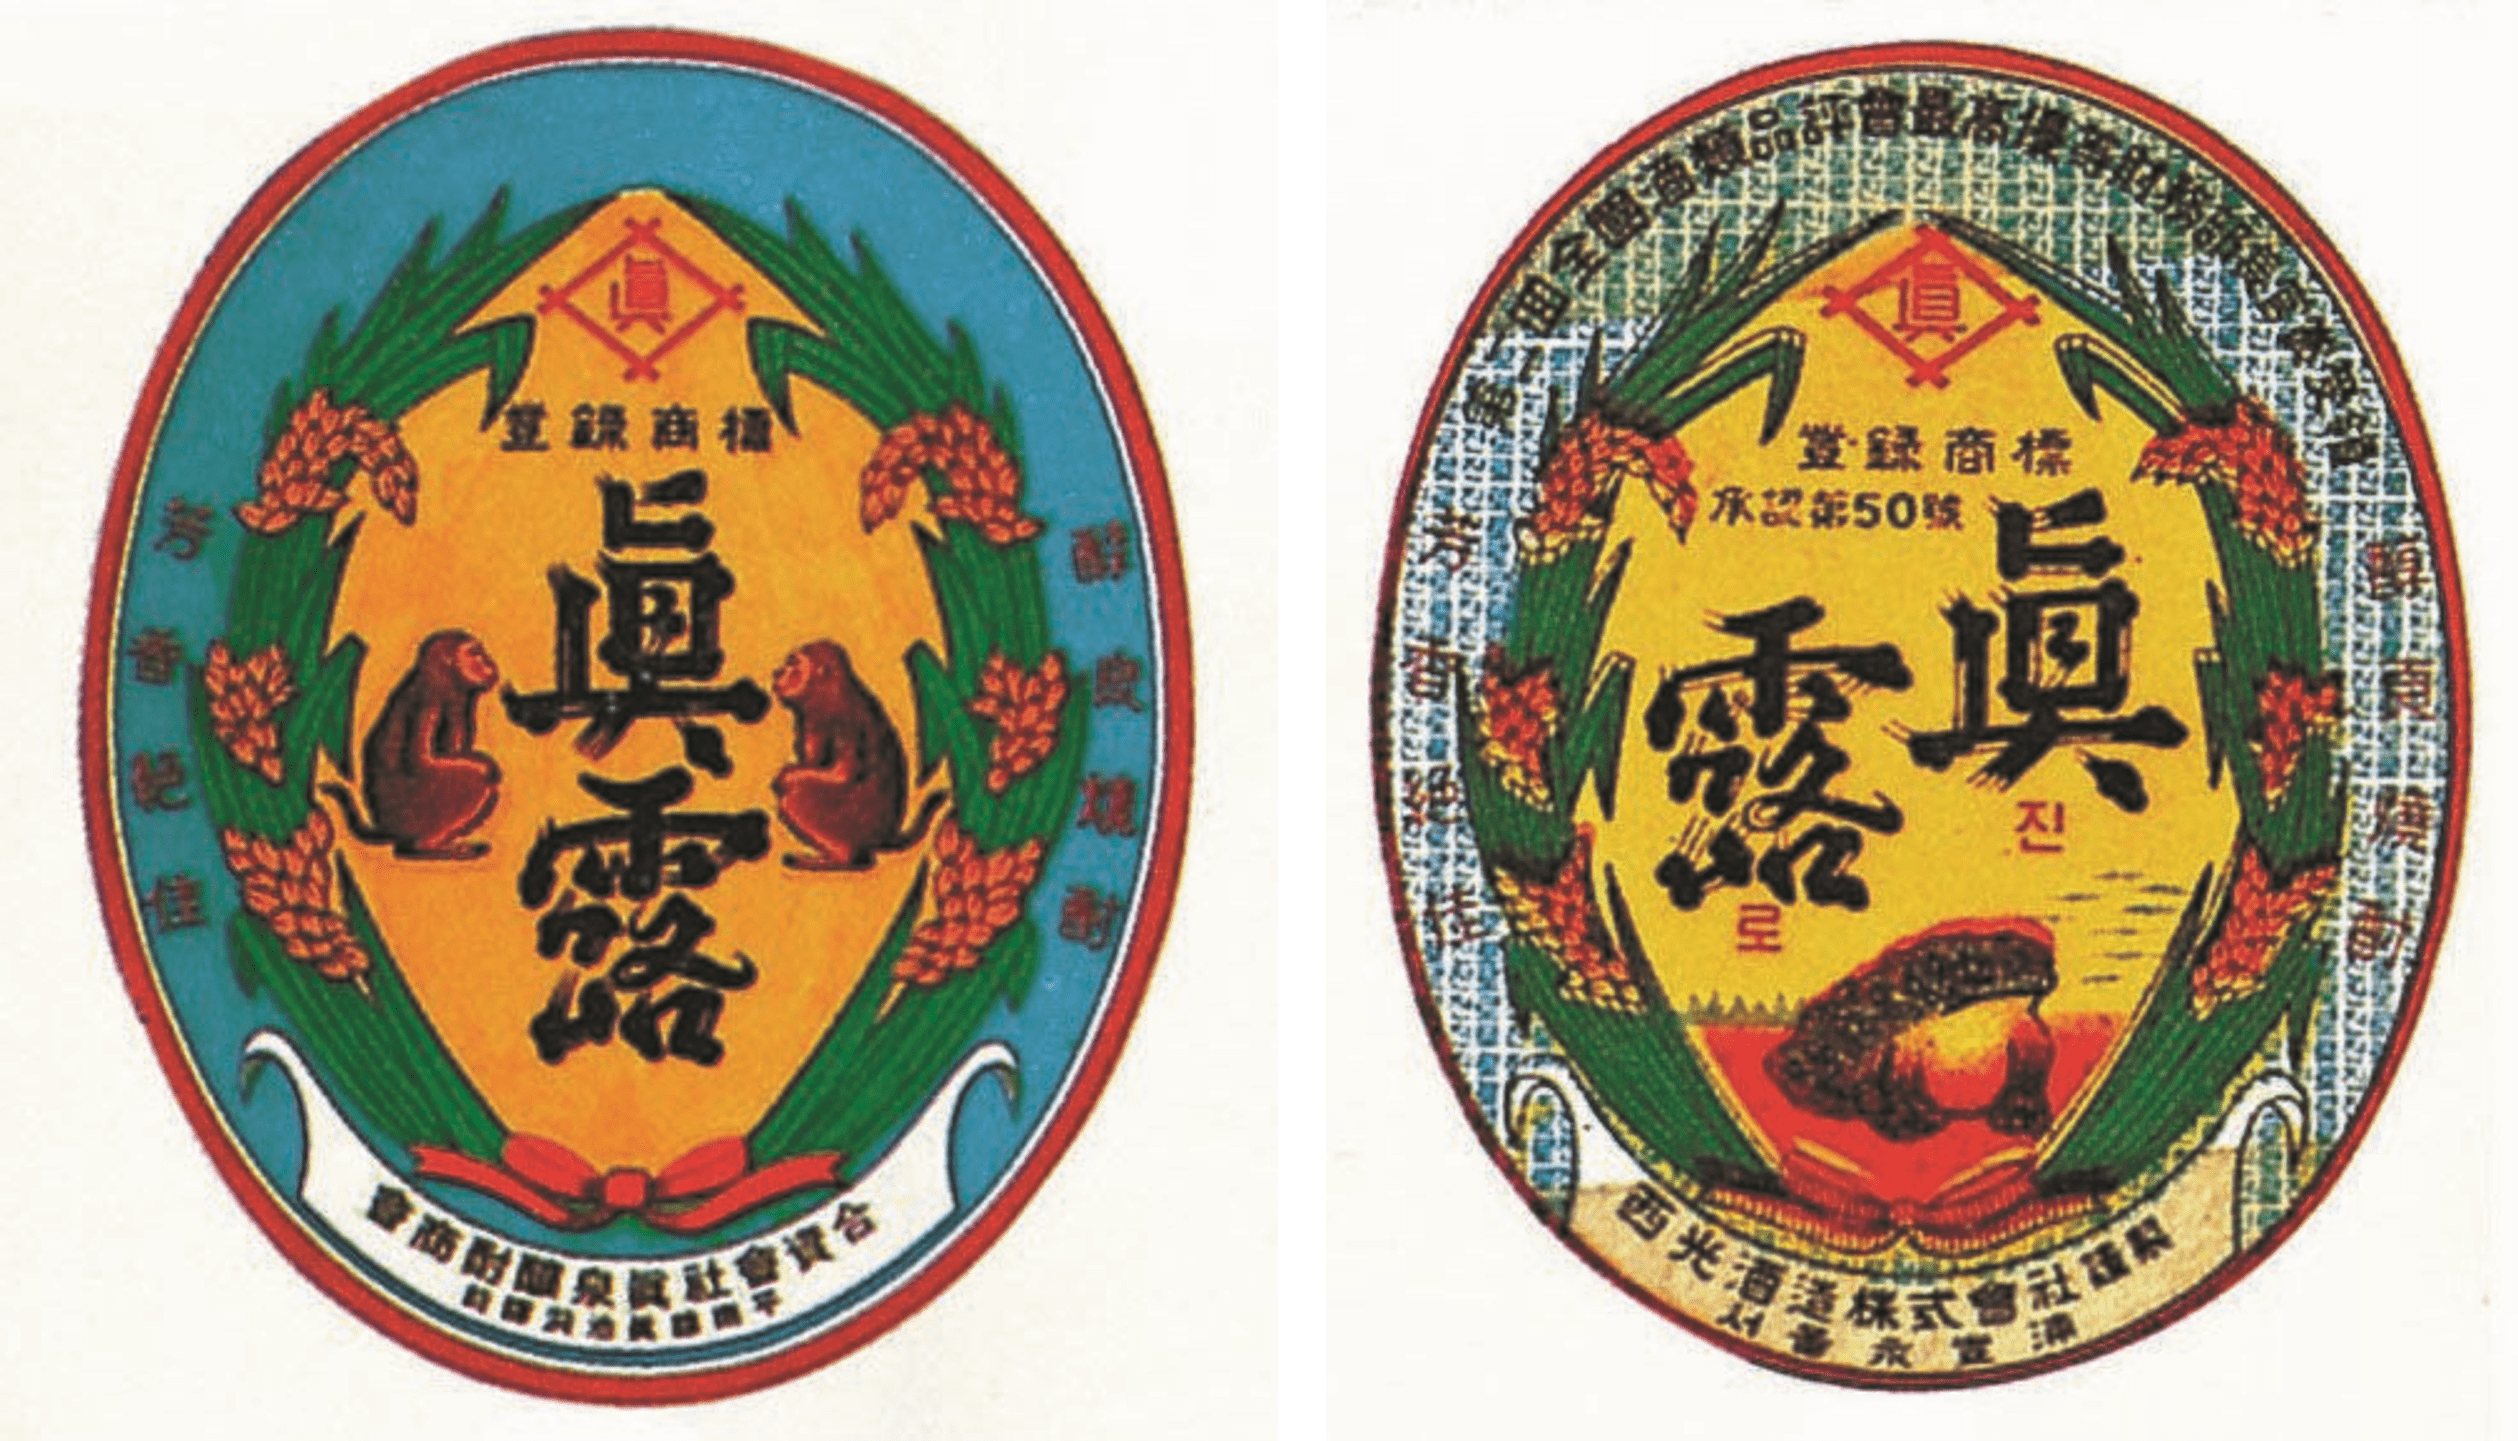 (왼)초기 진로 상표 속 원숭이 (오)남한에서 새롭게 만든 상표 속 두꺼비